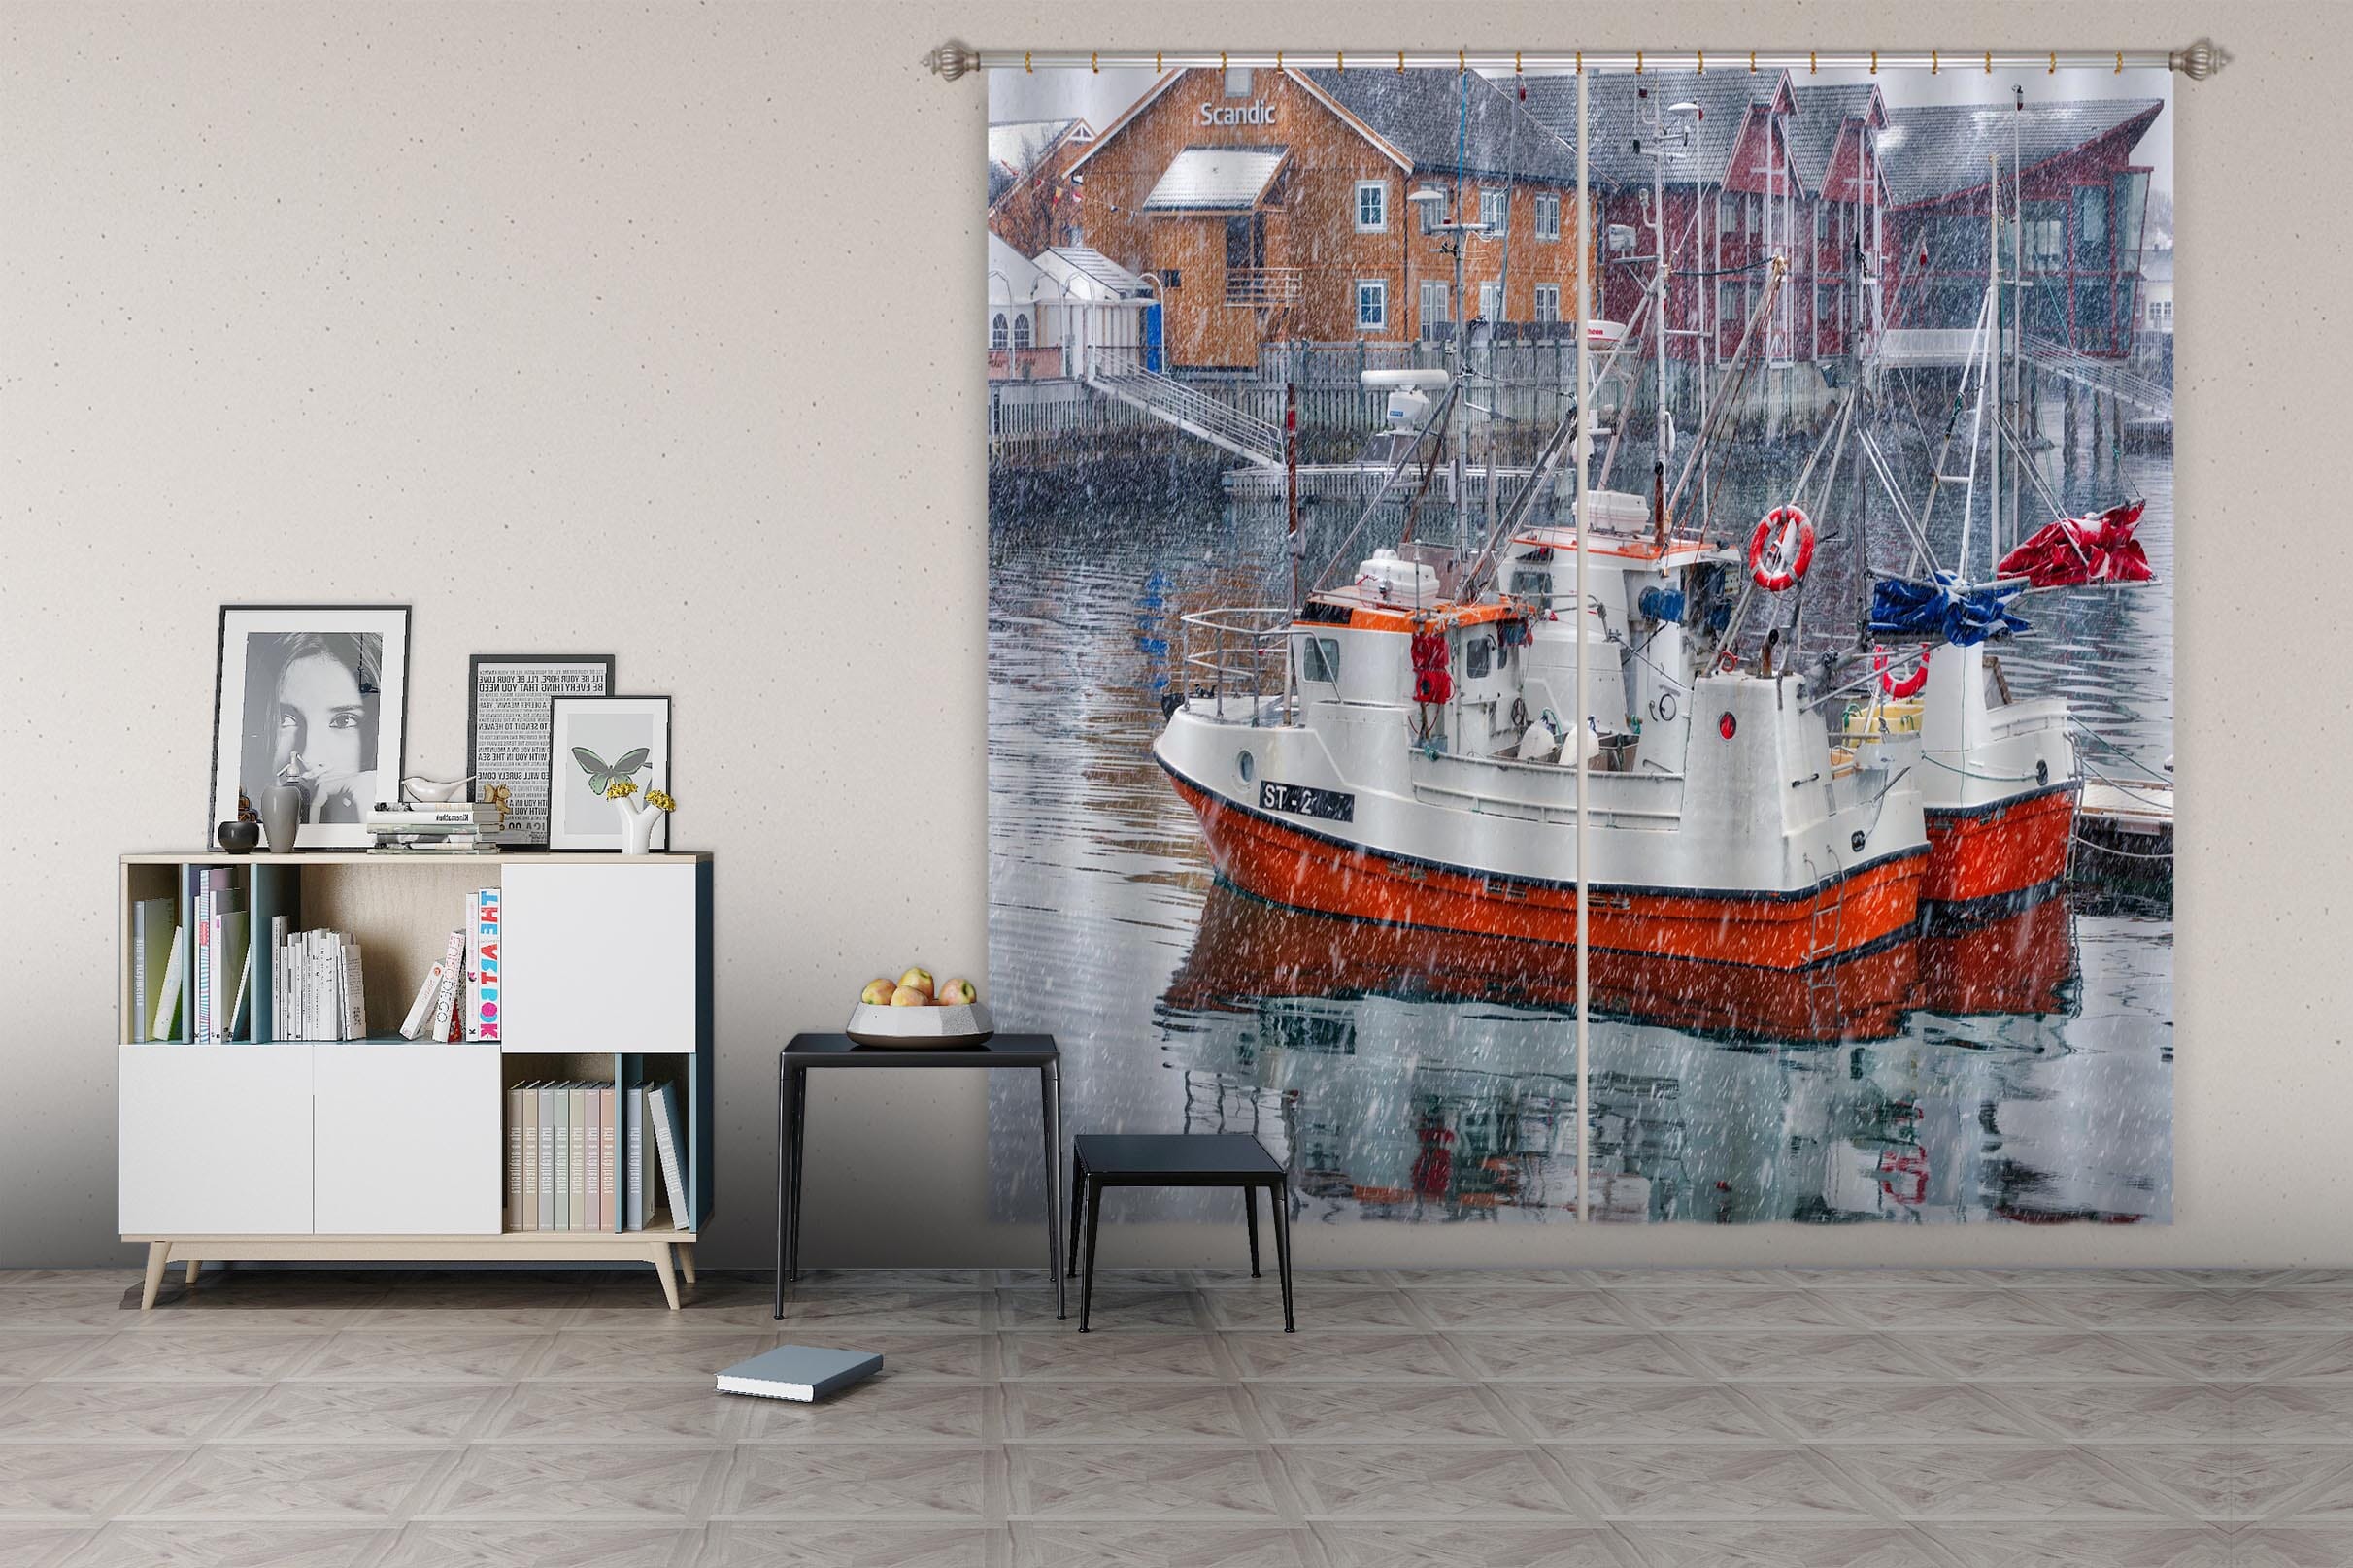 3D River Ship 045 Marco Carmassi Curtain Curtains Drapes Curtains AJ Creativity Home 